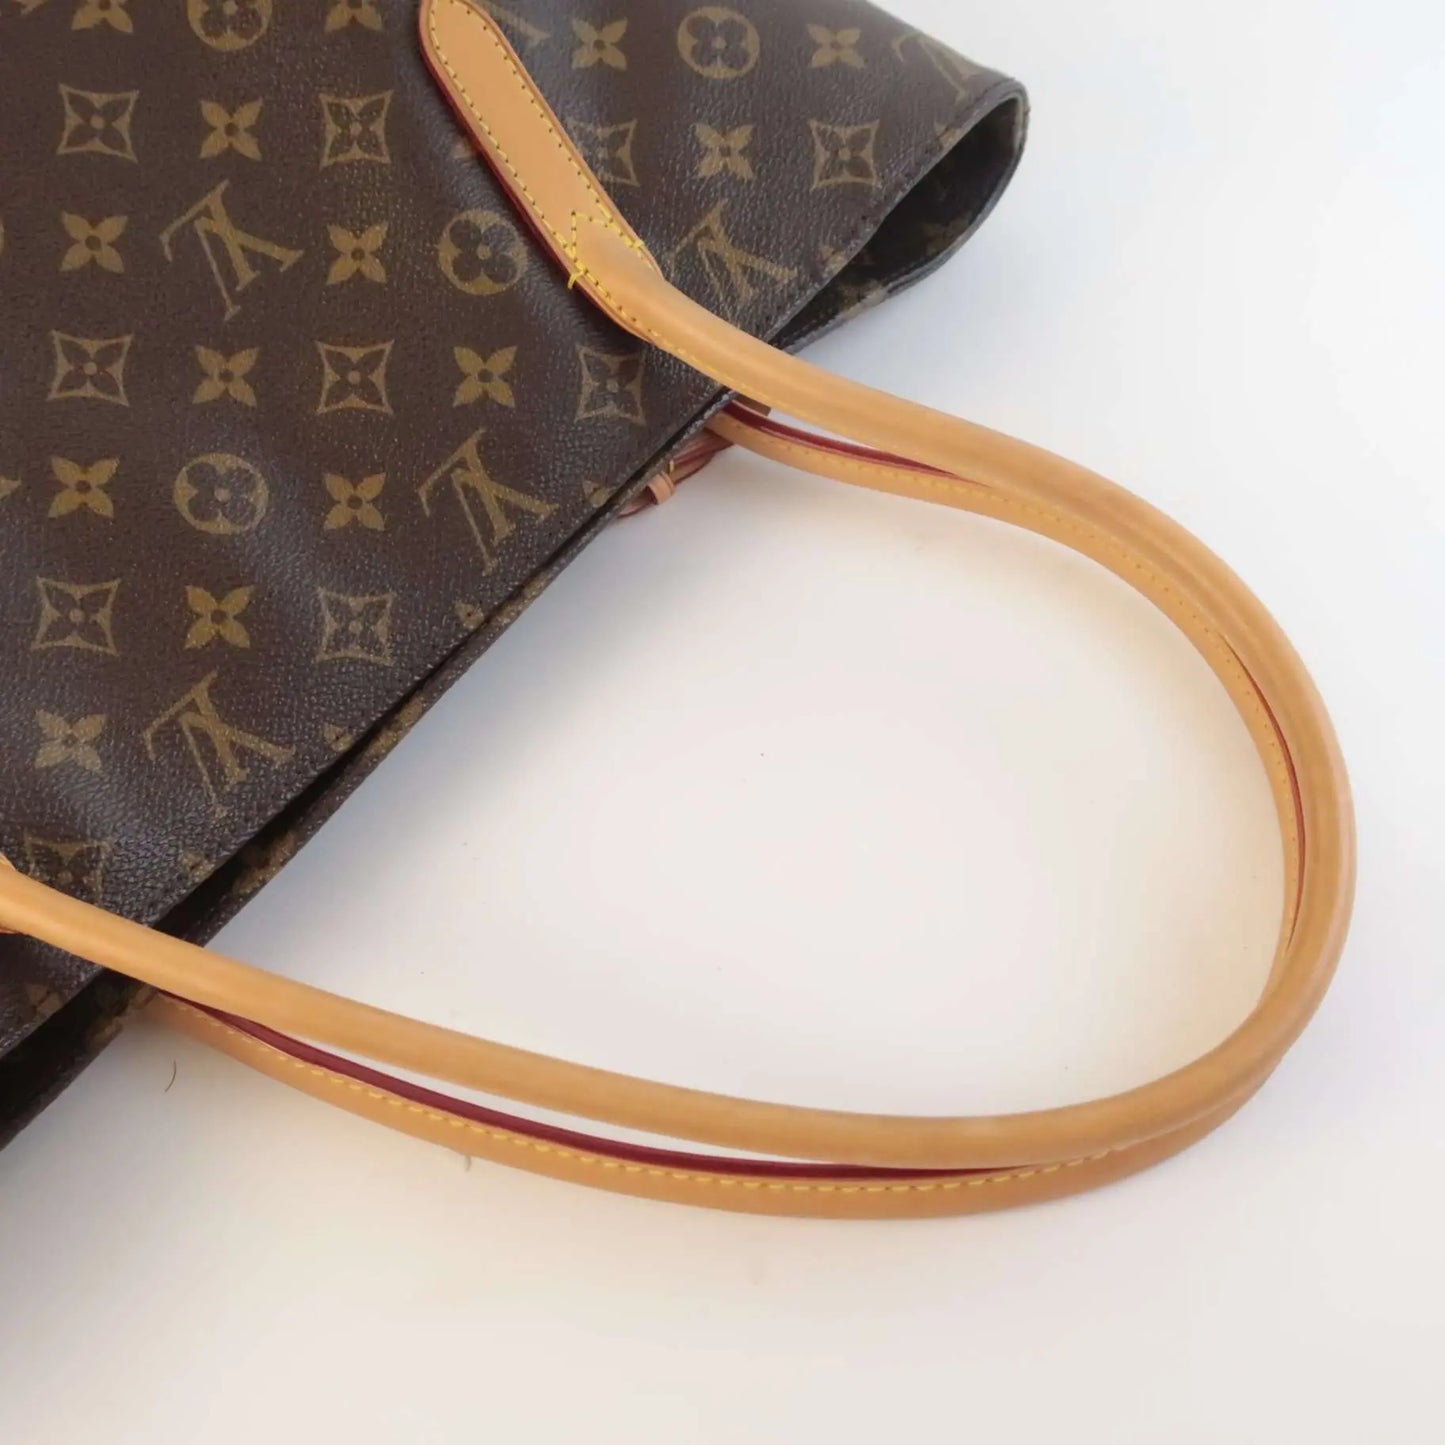 Louis Vuitton Monogram Raspail PM Tote Bag – JDEX Styles